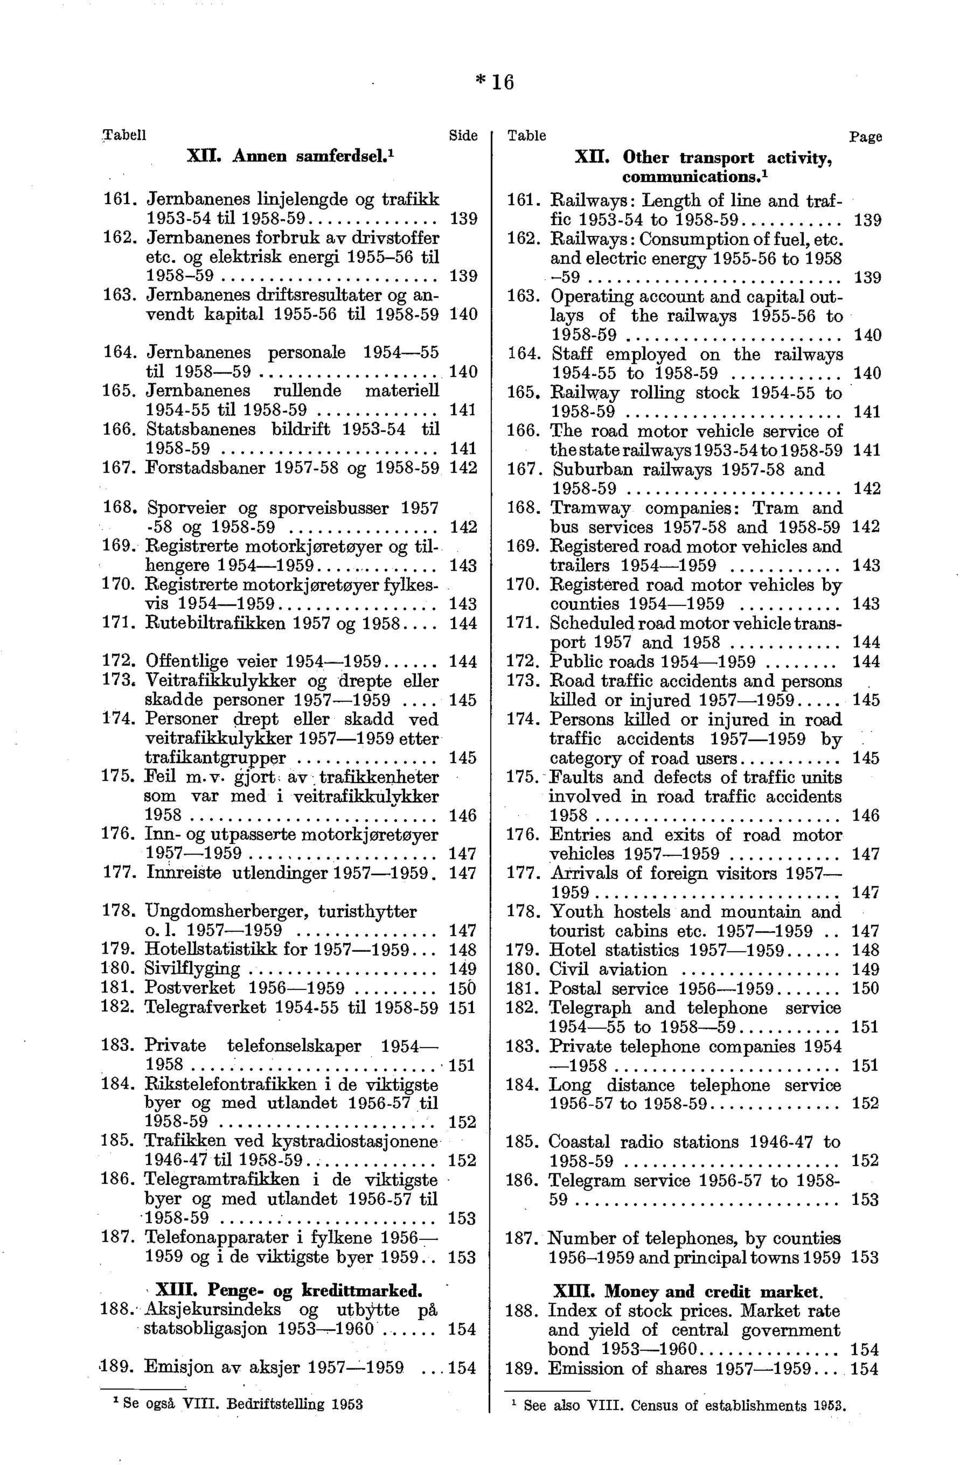 Railways : Consumption of fuel, etc and electric energy 1955-56 to 1958 1958-59 139-59 139 163. Jernbanenes driftsresultater og anvendt 163.